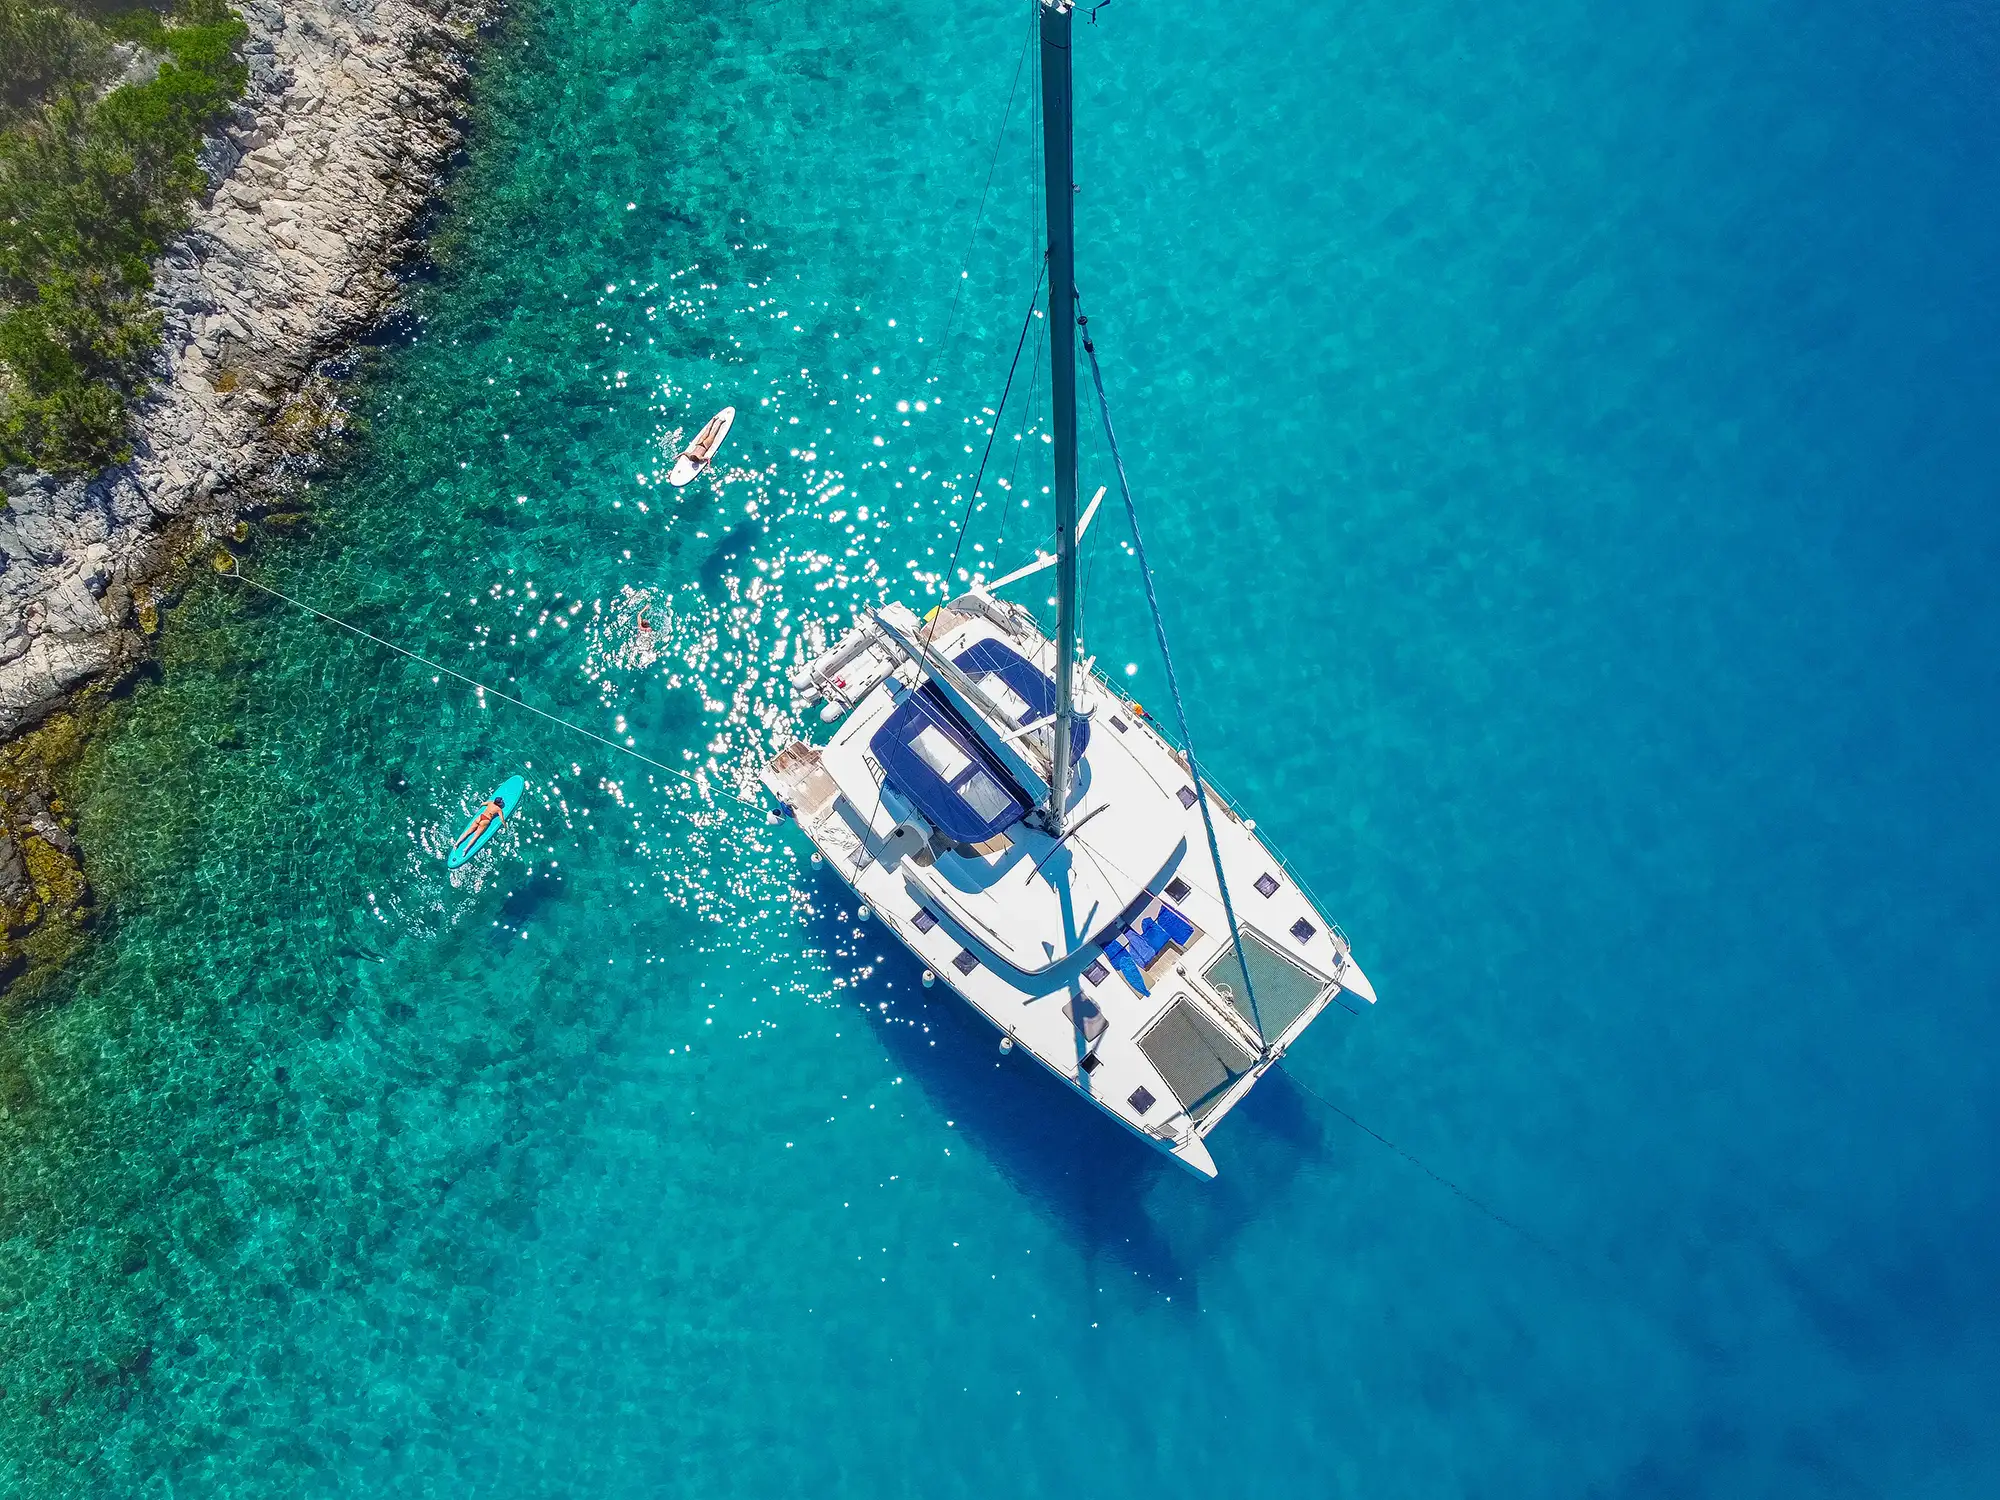 People swimming near the catamaran in the Adriatic Sea